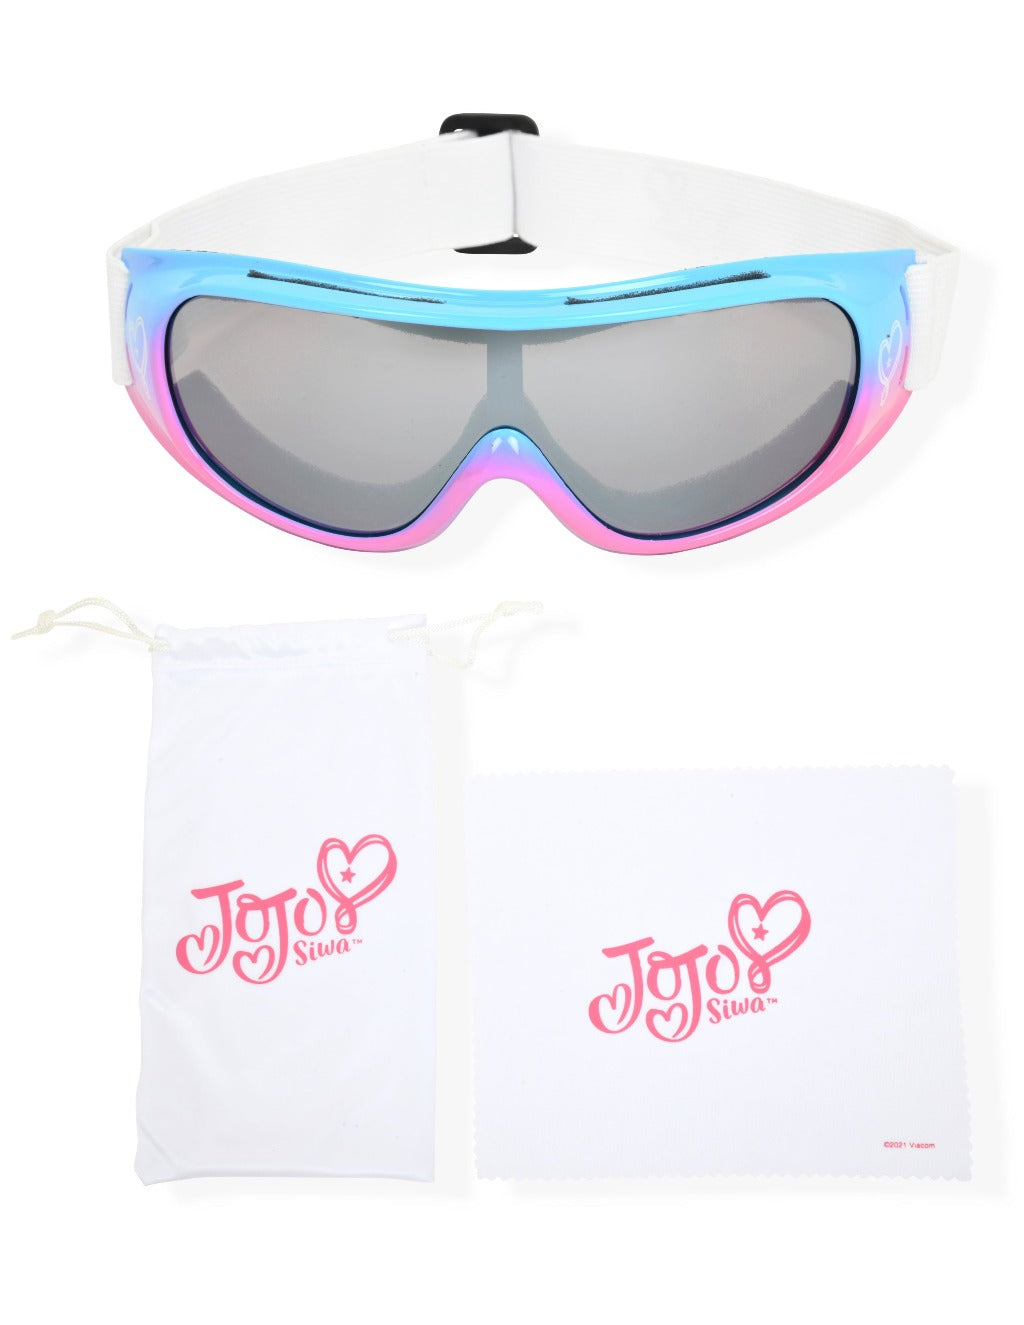 
                  
                    Jojo Siwa Ski goggles for kids
                  
                